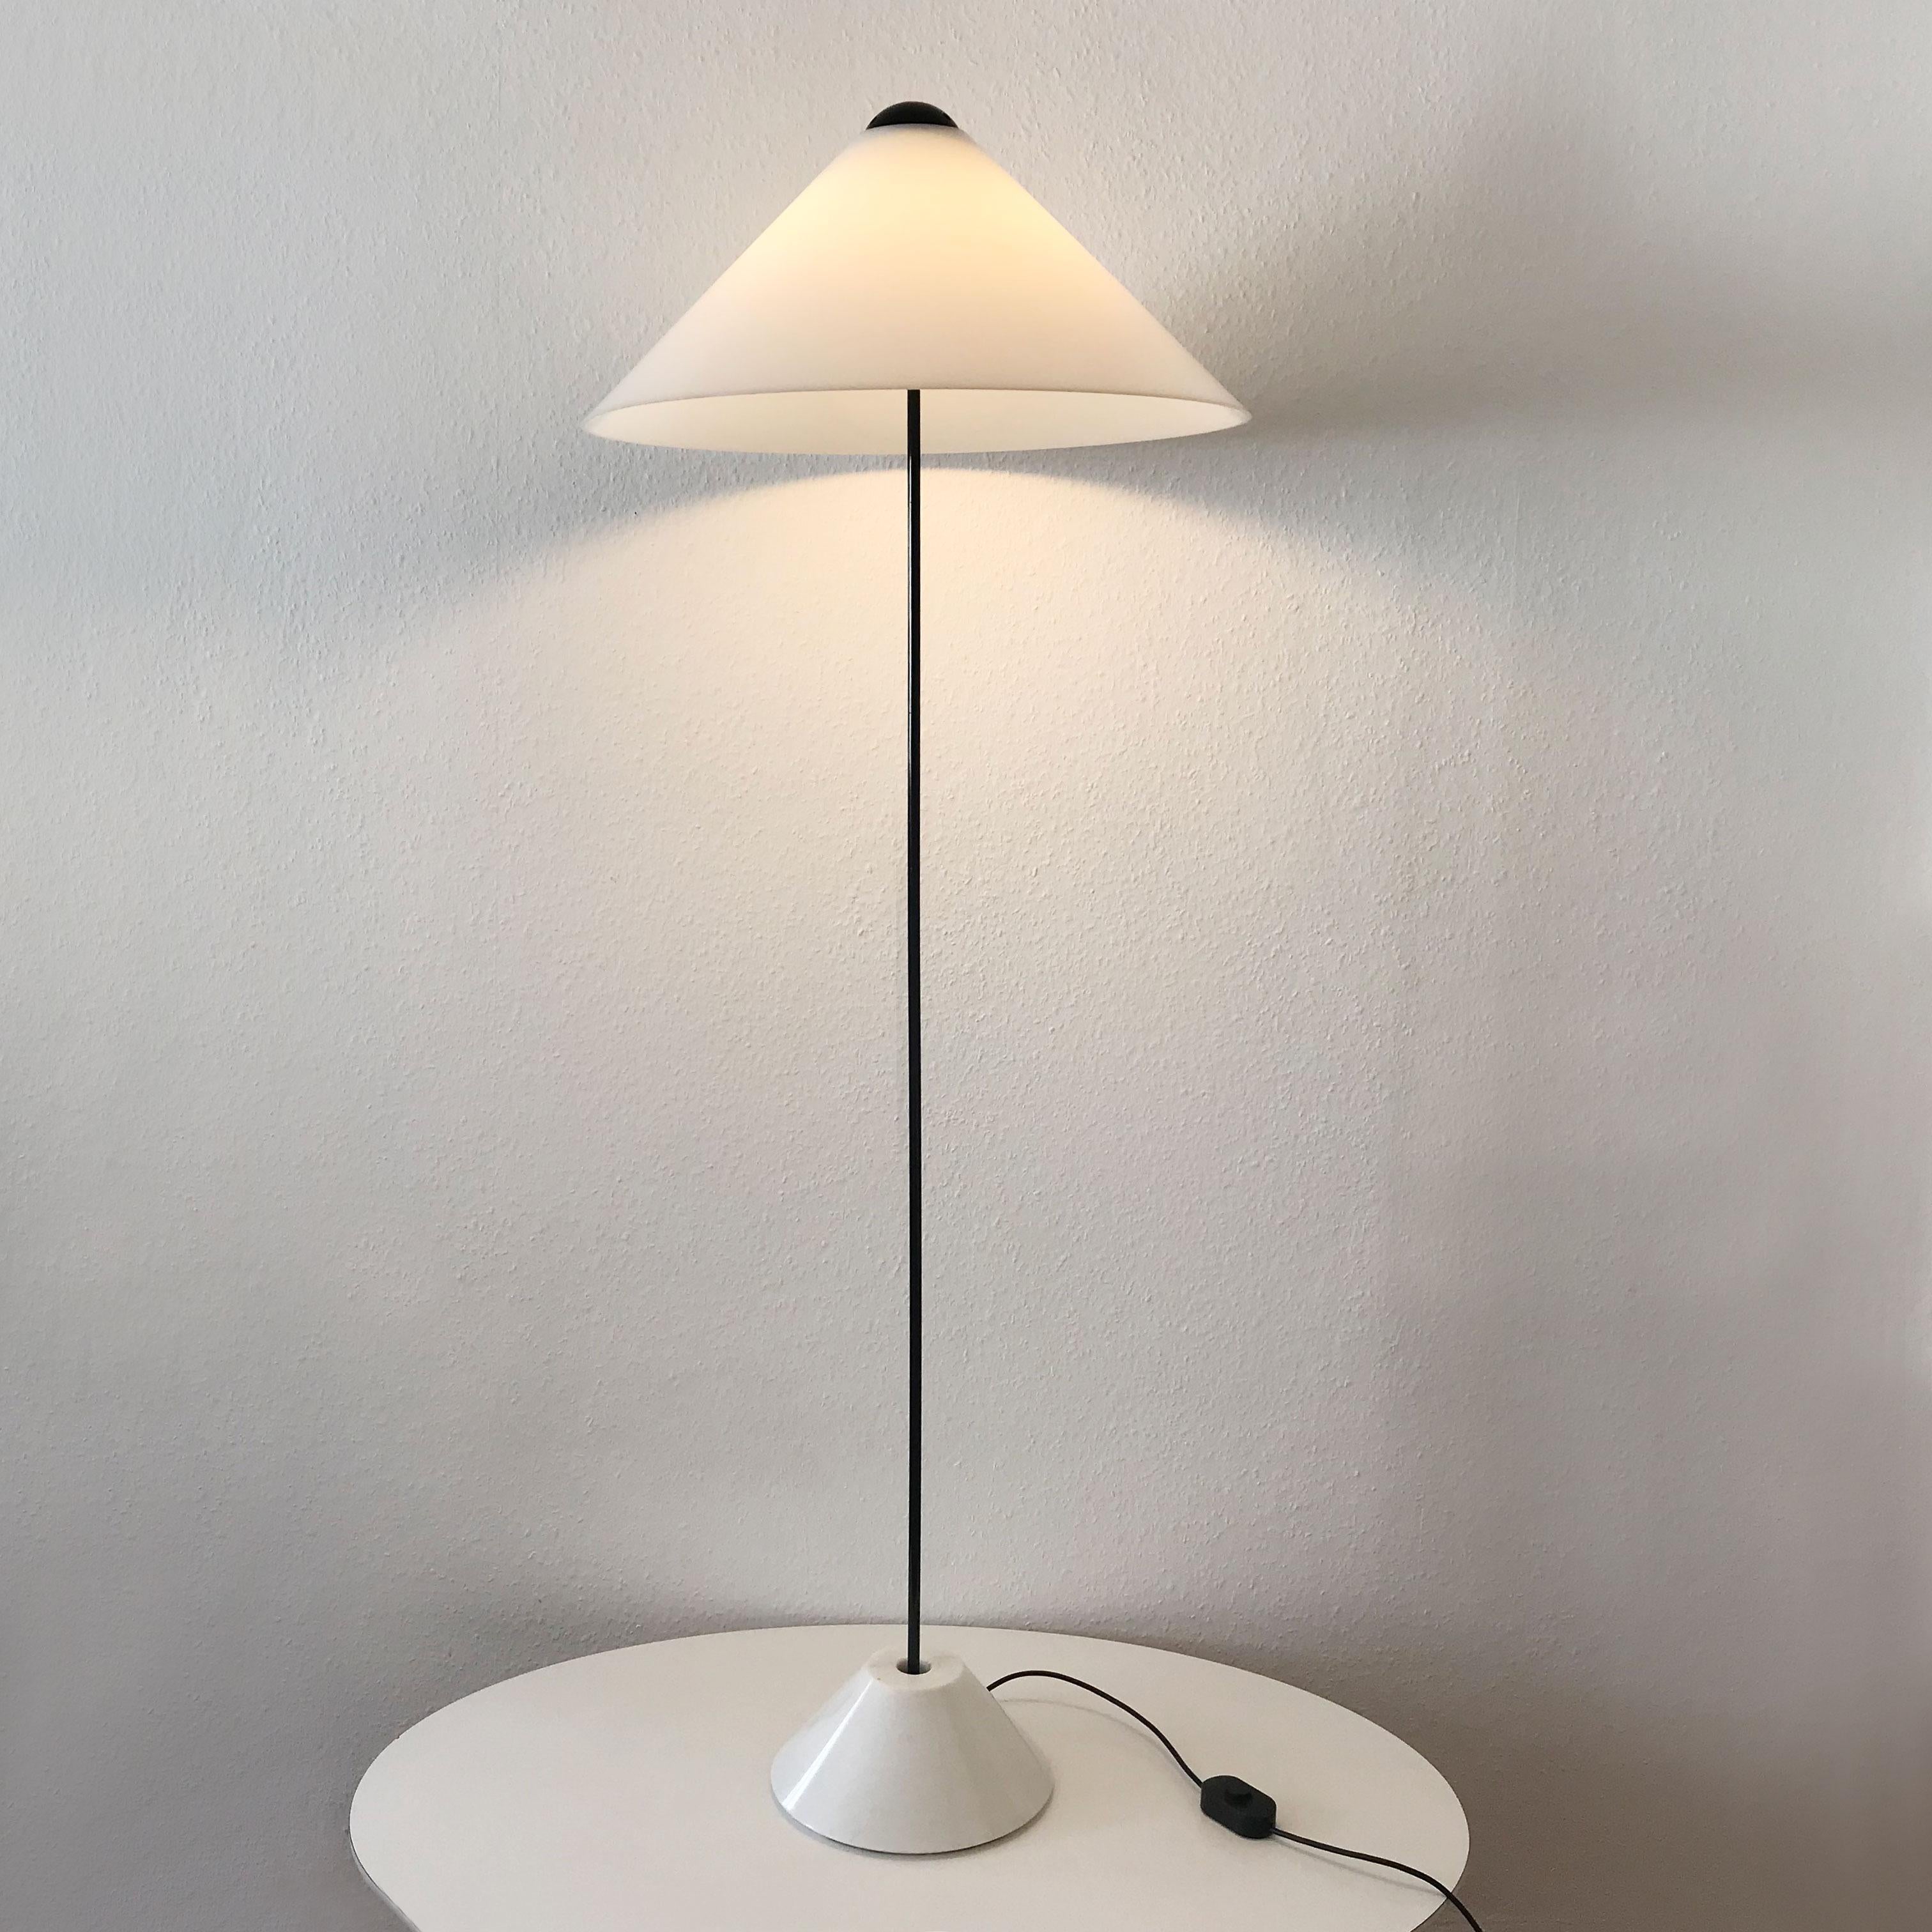 Exceptionnel lampadaire Mid-Century Modern Snow. Conçu par le designer italien Vico Magistretti, 1973 pour O-Luce, Italie.

Ce lampadaire élégant et extrêmement rare est exécuté avec une tige en acier, du marbre et un abat-jour en acrylique. Elle